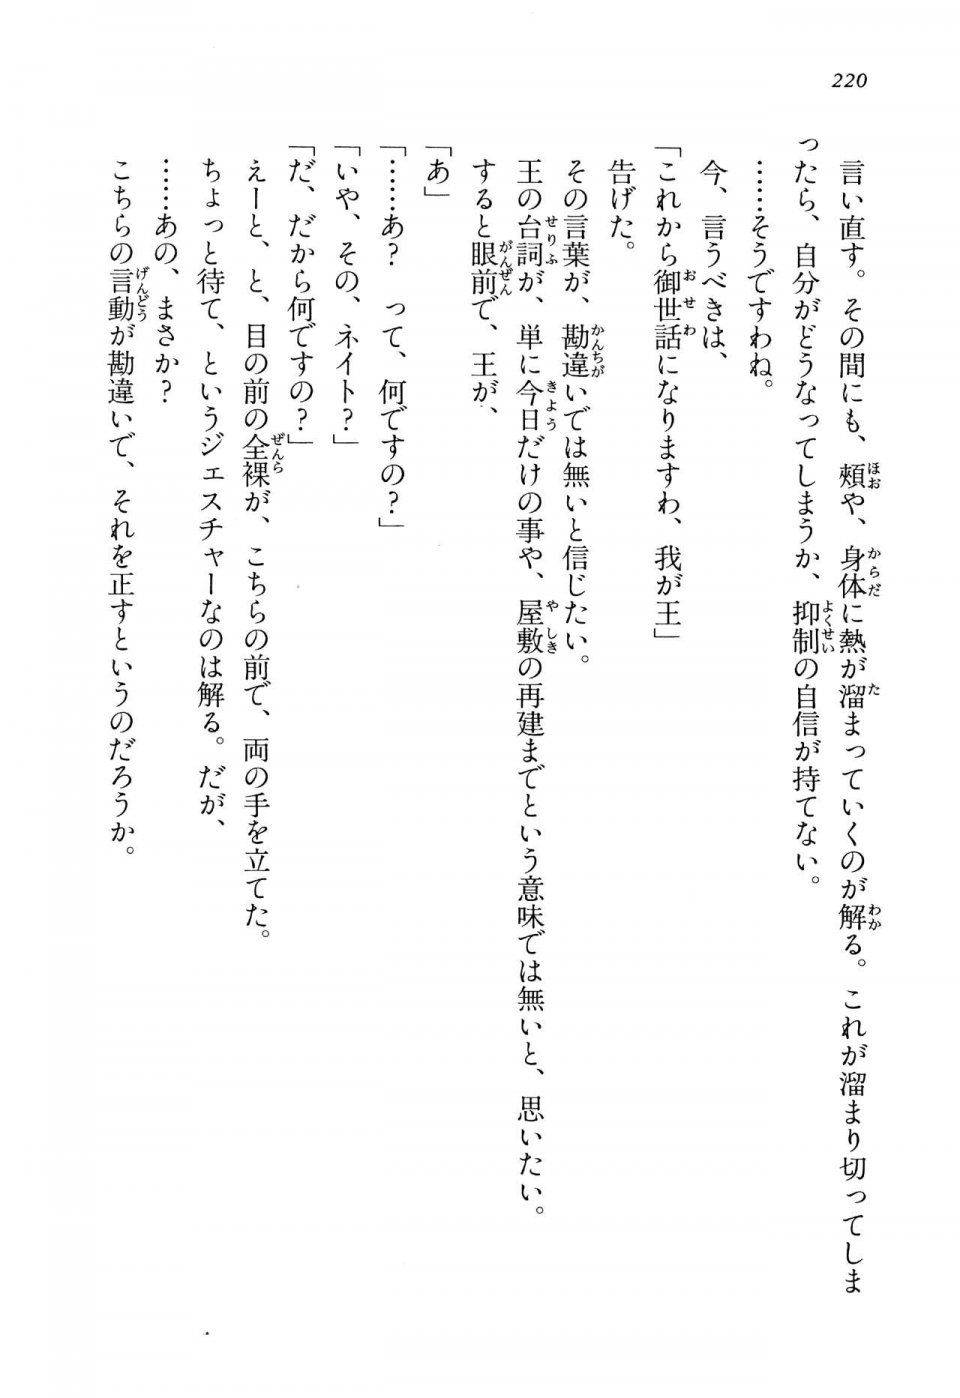 Kyoukai Senjou no Horizon LN Vol 14(6B) - Photo #220